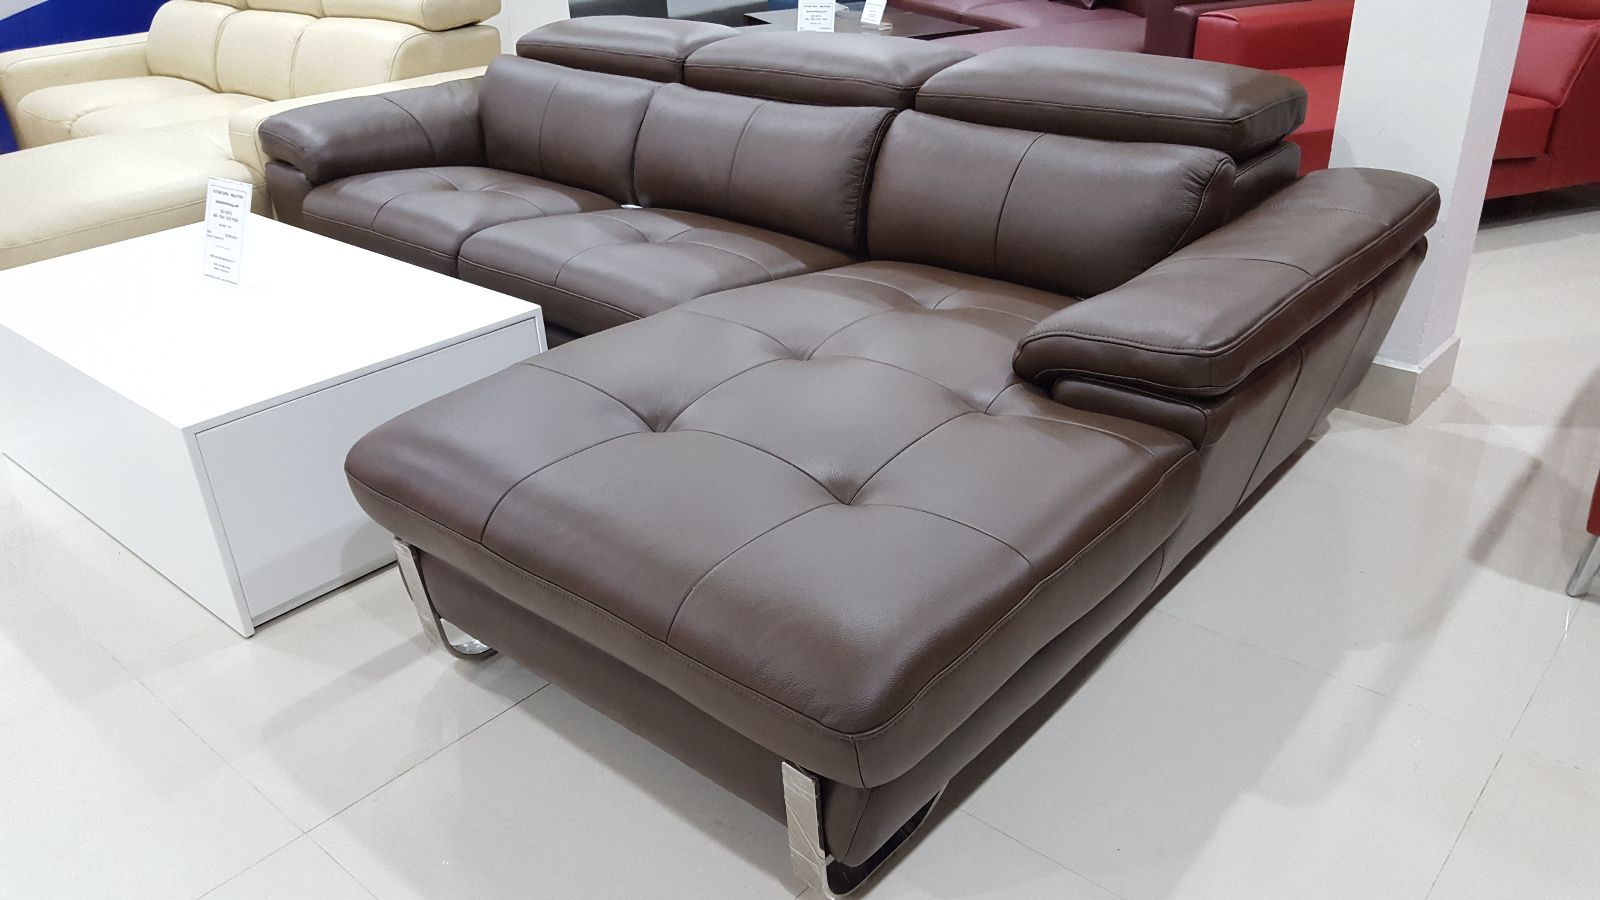 15+ mẫu sofa nhập khẩu cho phòng khách đẹp hút hồn - Ảnh 4